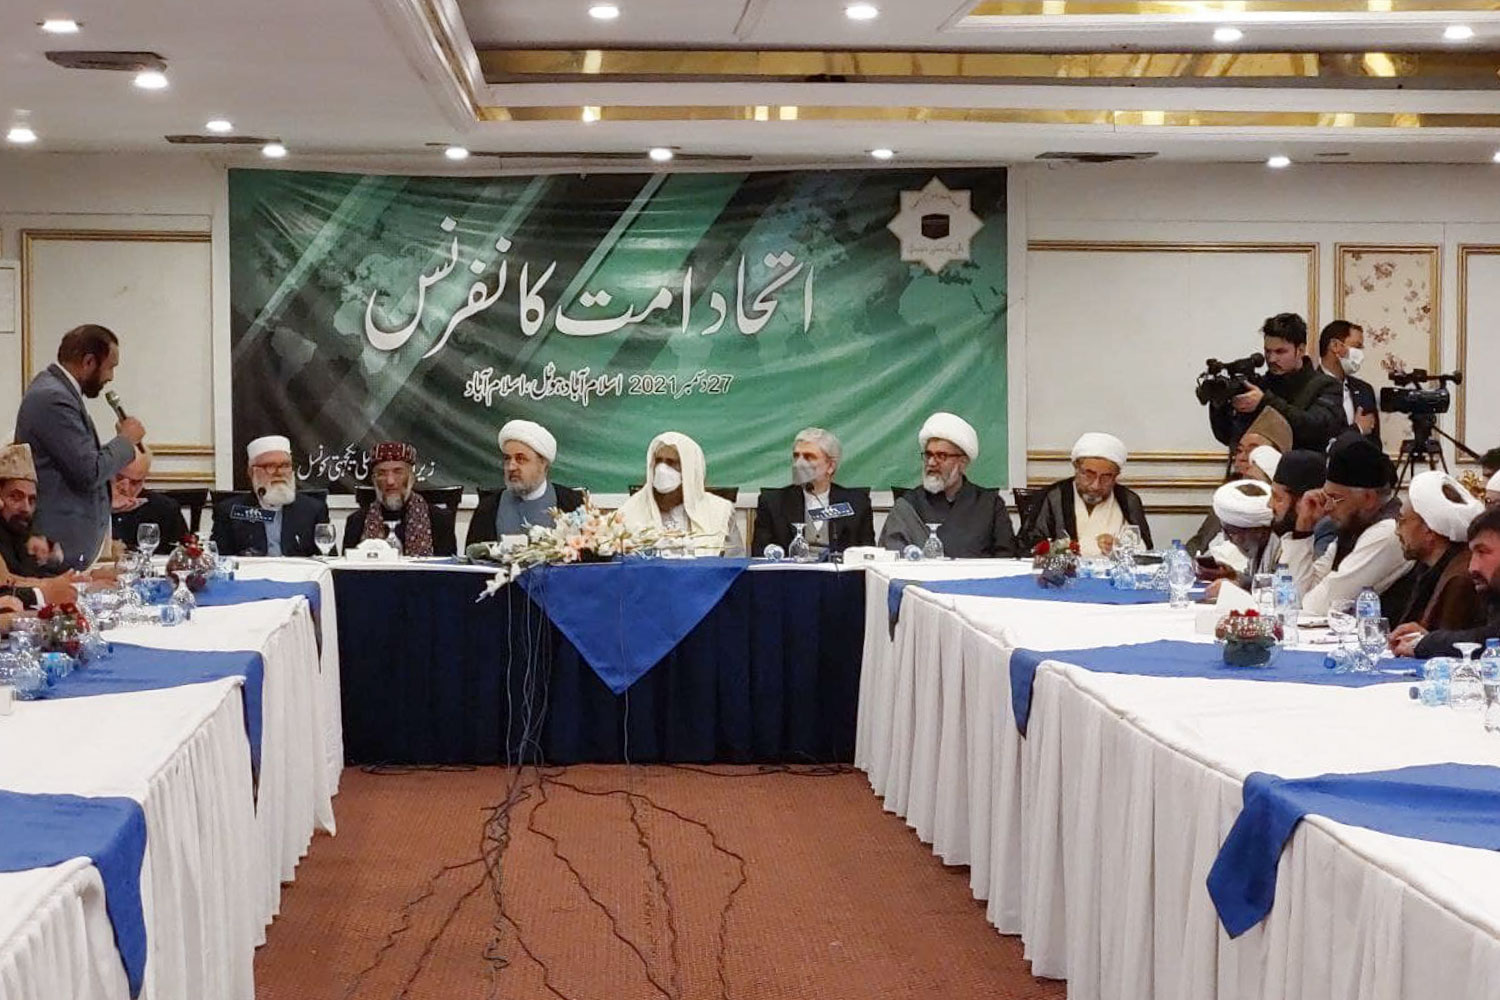 ملی یکجہتی کونسل پاکستان کےزیر اہتمام اتحاد امت کانفرنس کا اہتمام